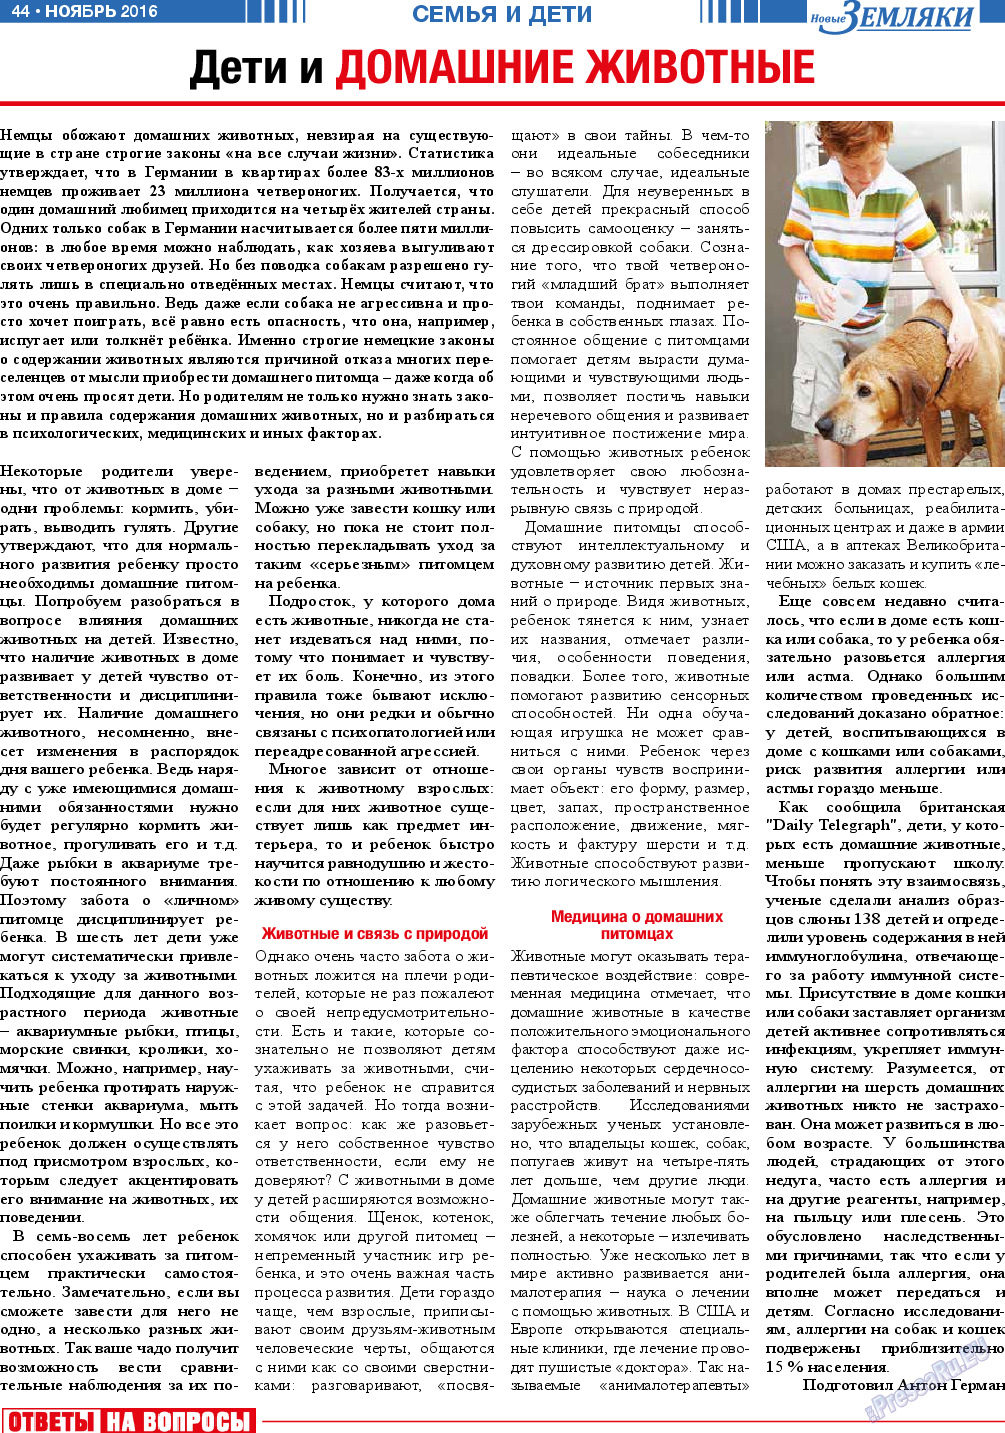 Новые Земляки (газета). 2016 год, номер 11, стр. 44